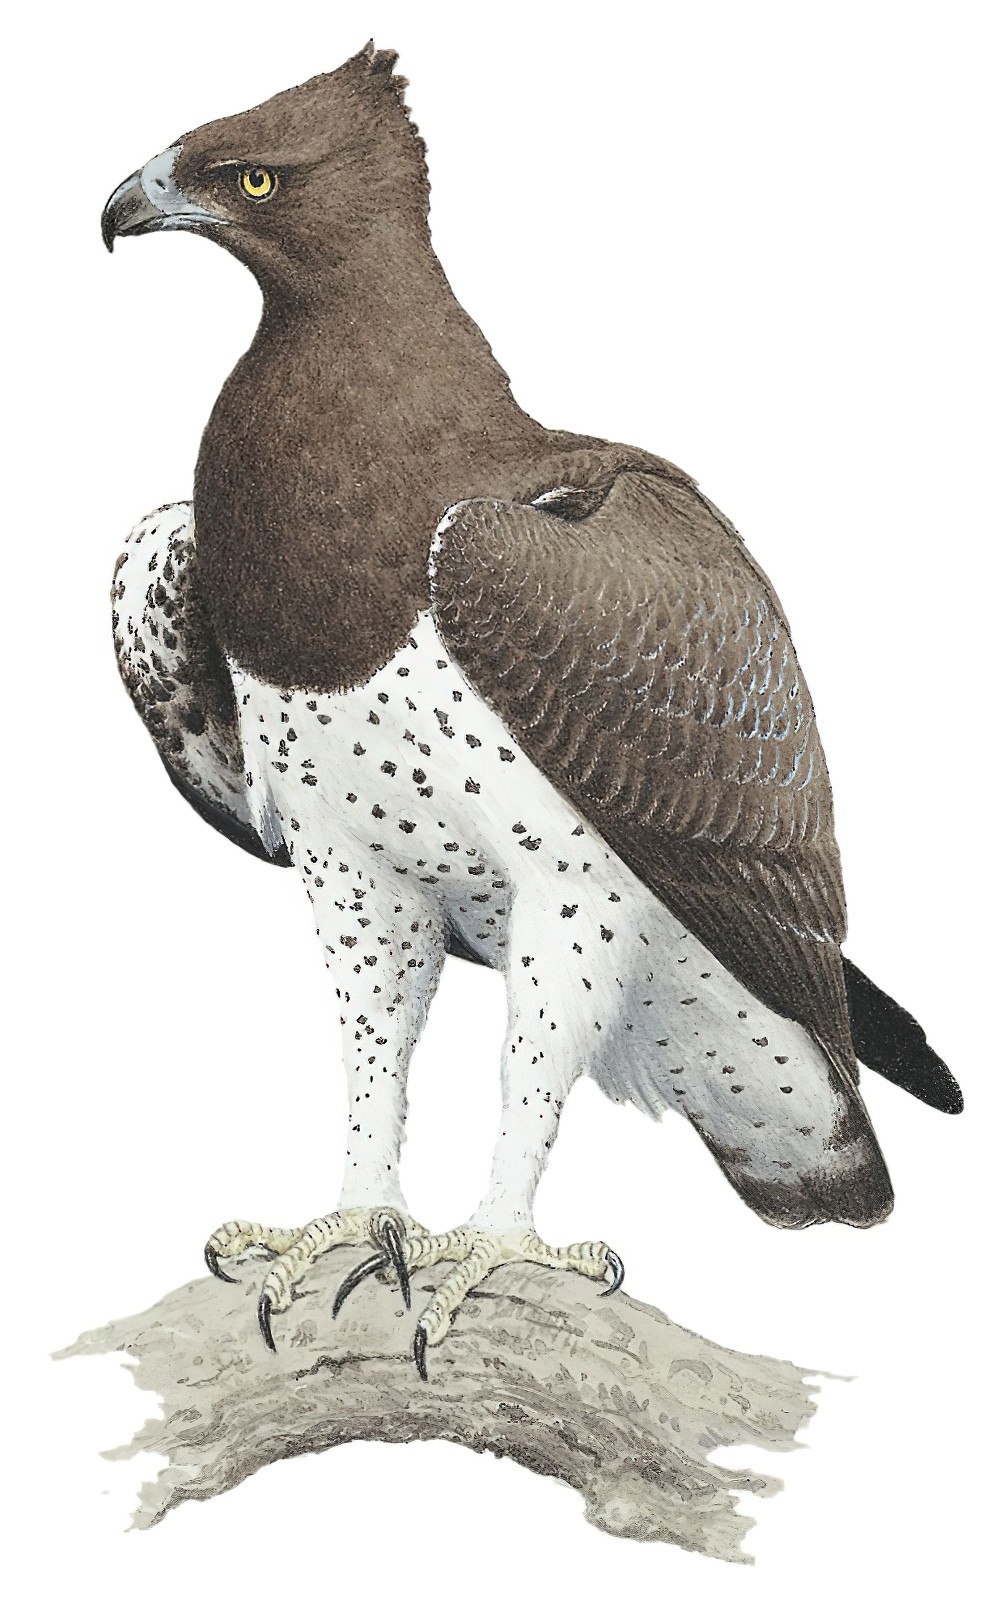 Martial Eagle / Polemaetus bellicosus